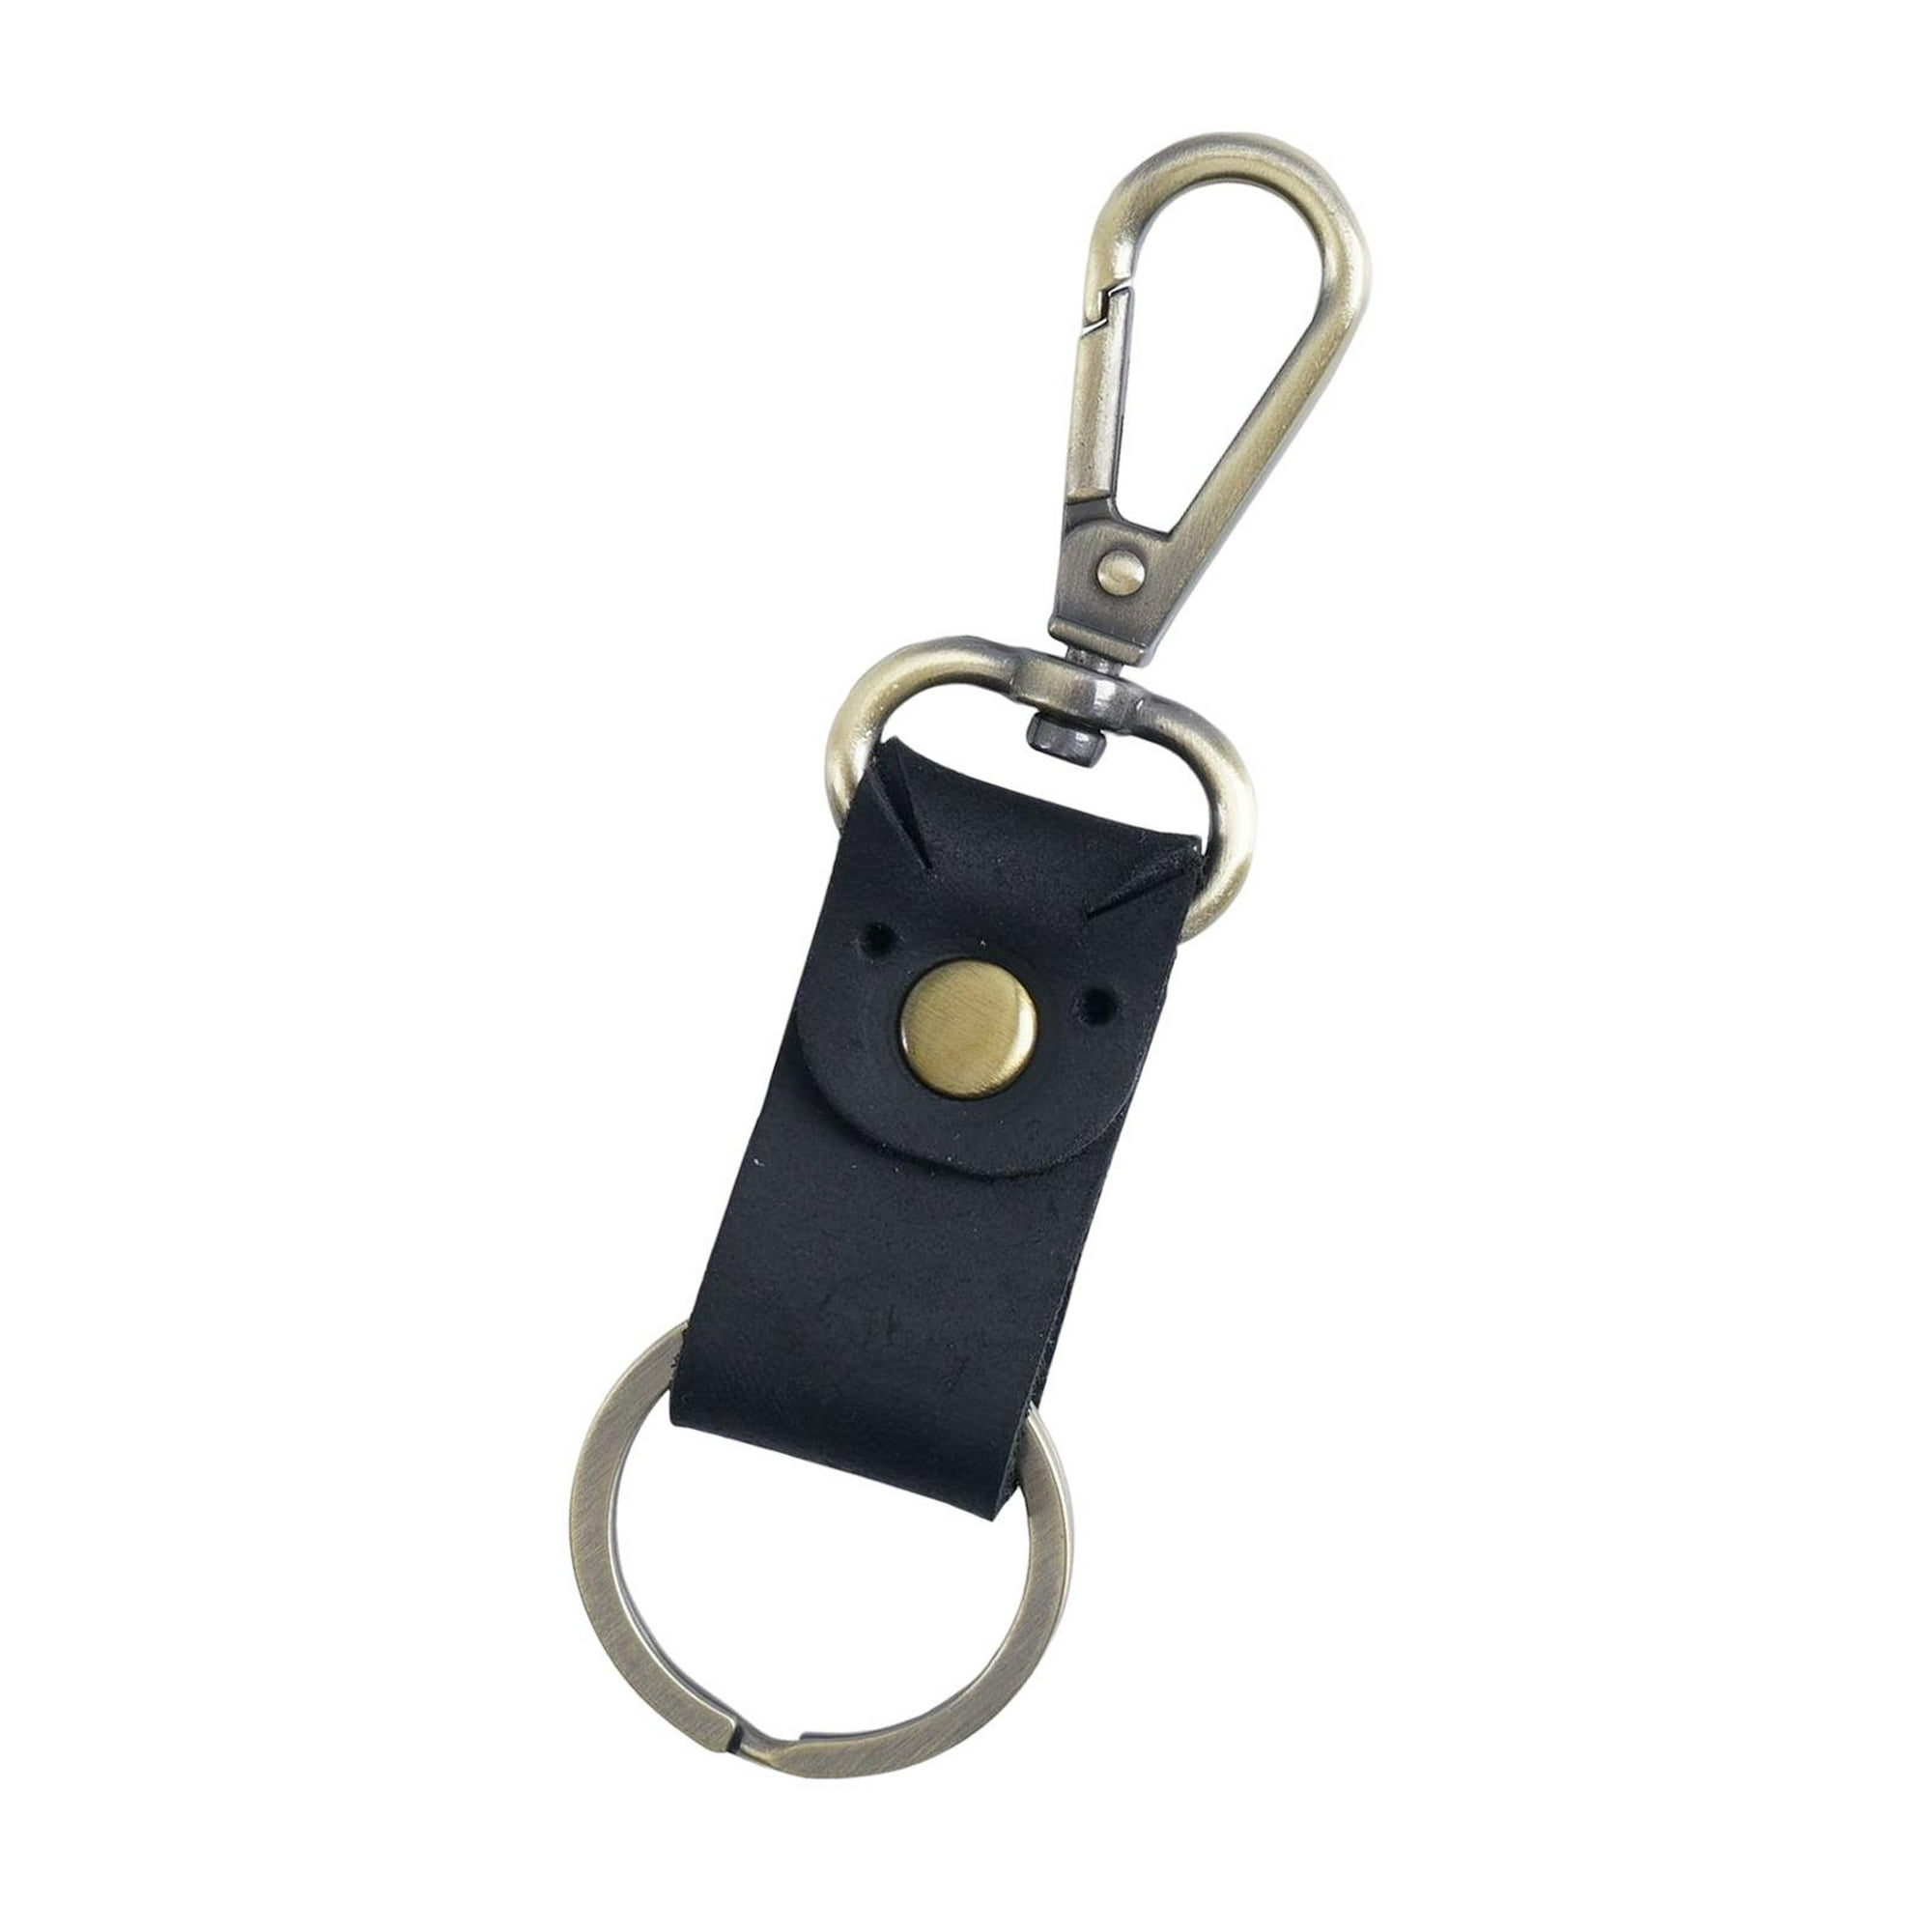  Correa para llaves, genial para llevar las llaves en el cuello  : Productos de Oficina